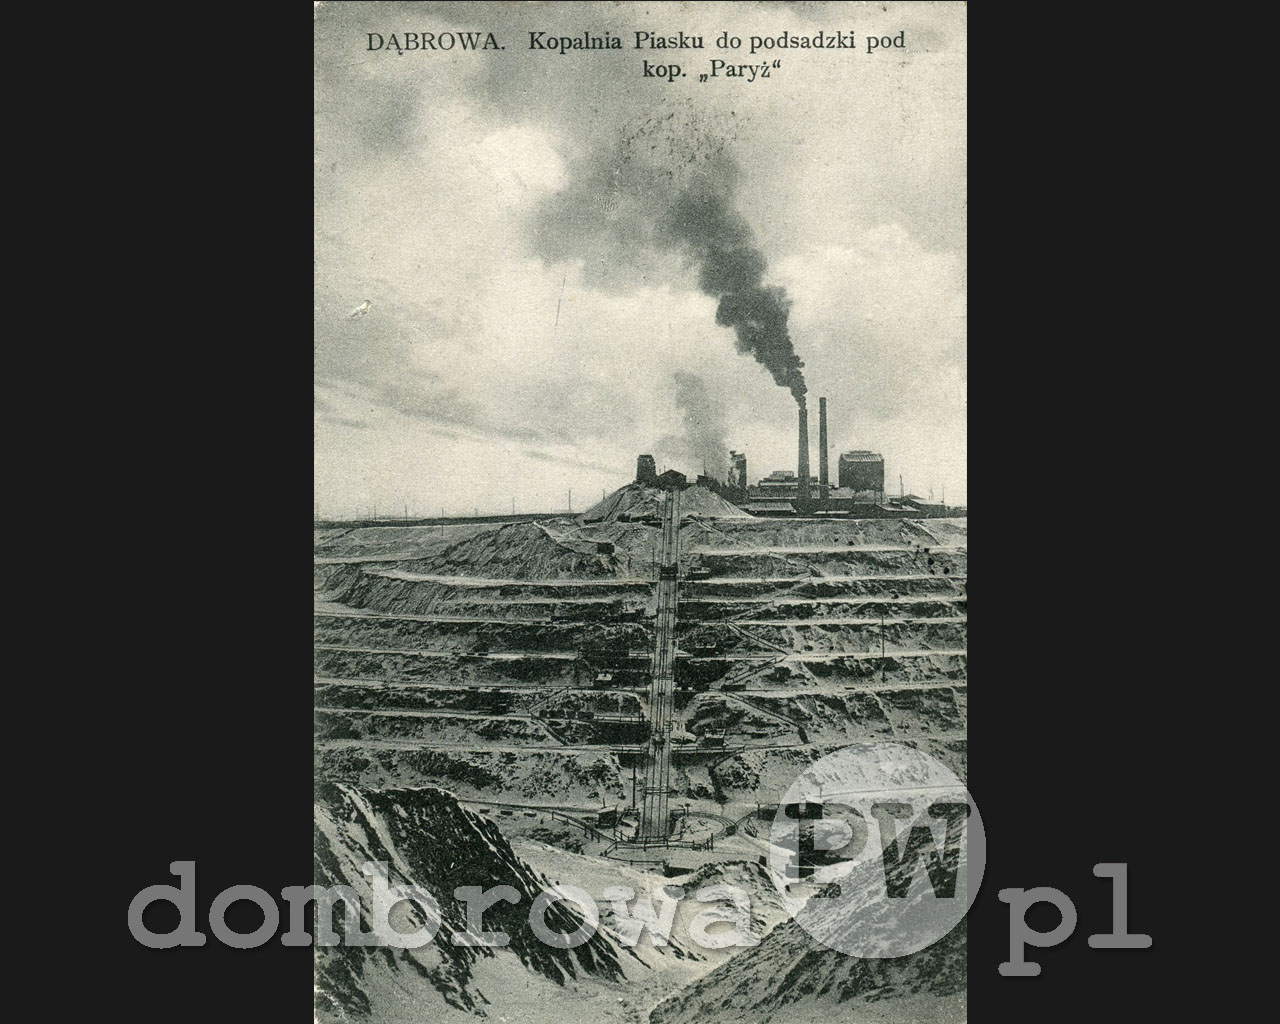 1910 r. Dąbrowa - Kopalnia piasku do podsadzki pod kopalnią Paryż (Rowiński)